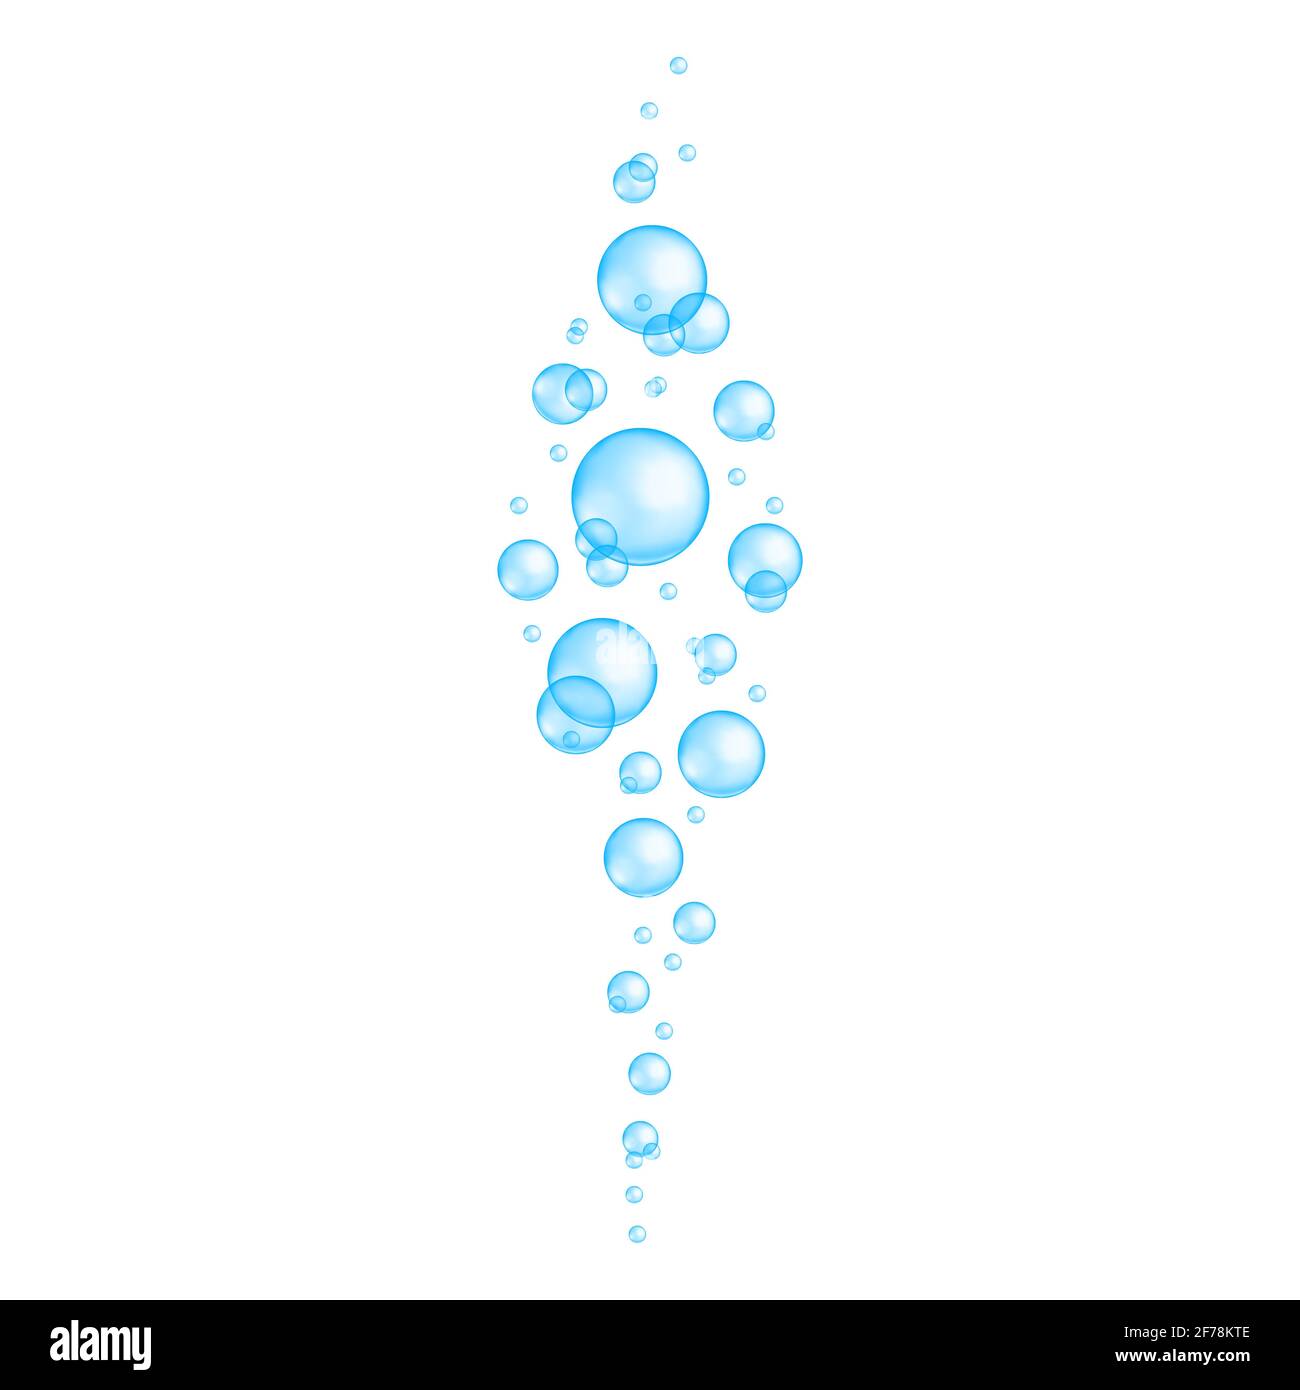 Blaue Unterwasserblasen. Aquarium oder Meerwasser Stream, Bad sud, Seife oder Reinigungsmittel Schaum, kohlensäurehaltige Getränk Wirkung. Vektor-realistische Darstellung. Stock Vektor